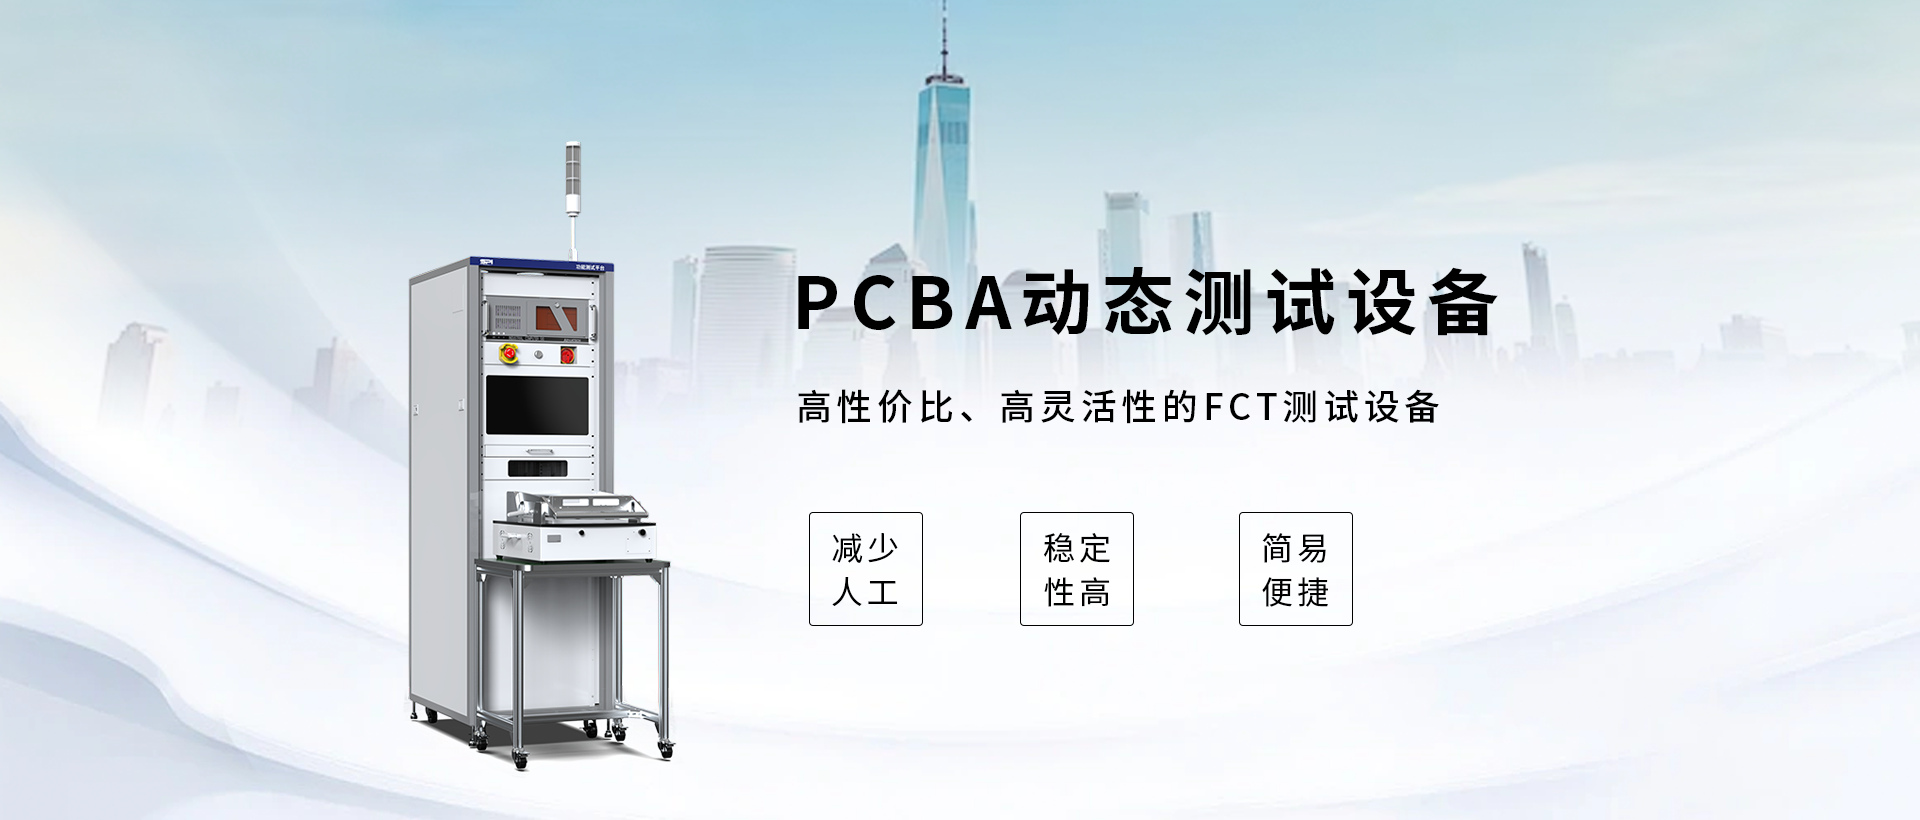 PCBA烧录设备